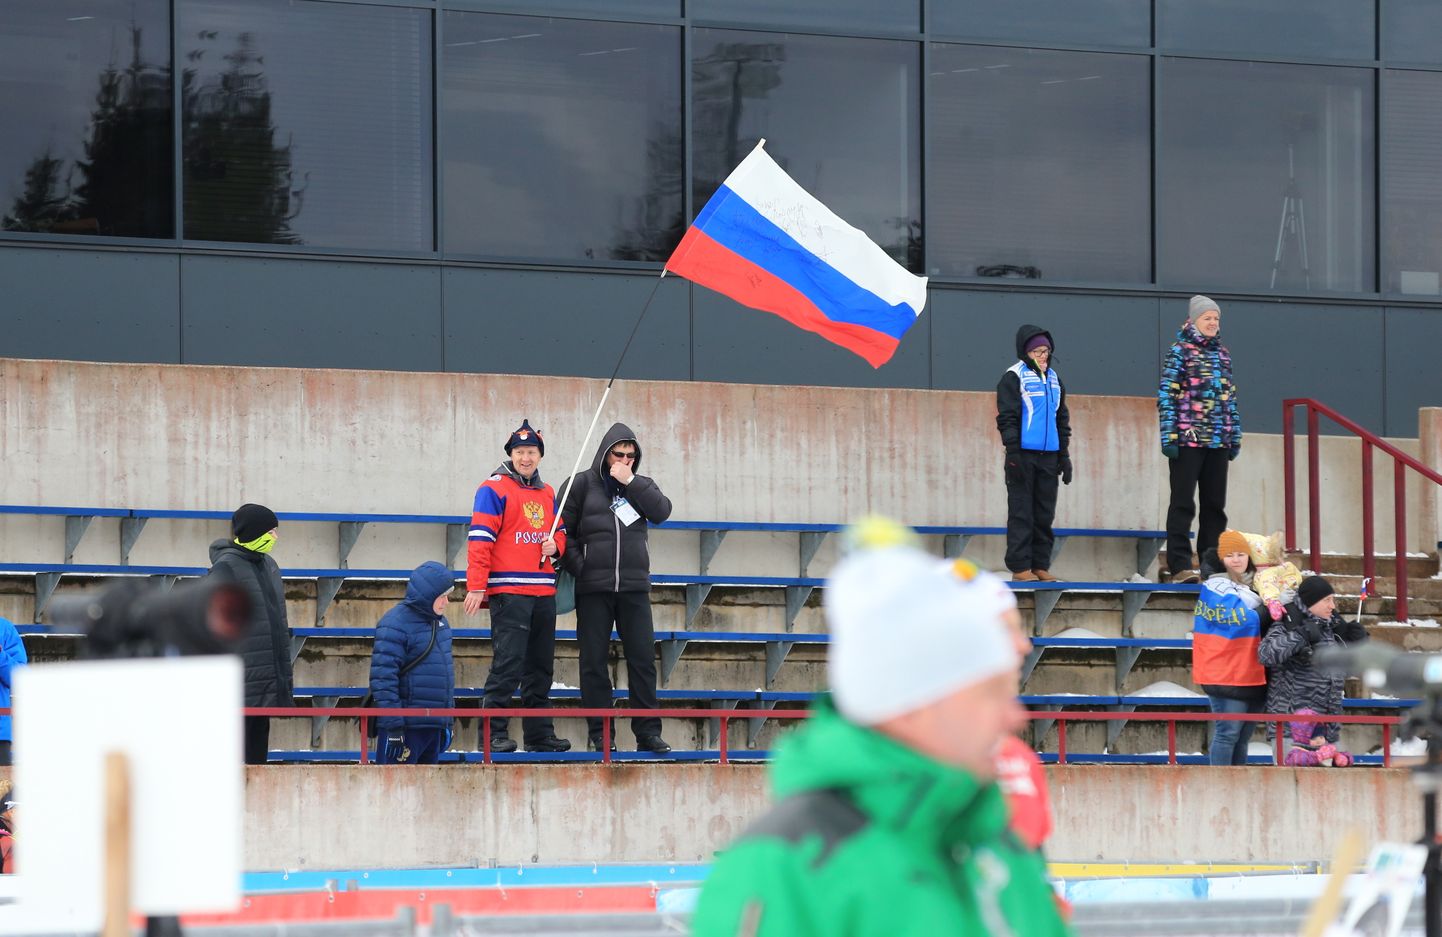 Venemaa koondise poolehoidjad pole kindlasti just väga õnnelikud noorte sportlaste lahkumisest.